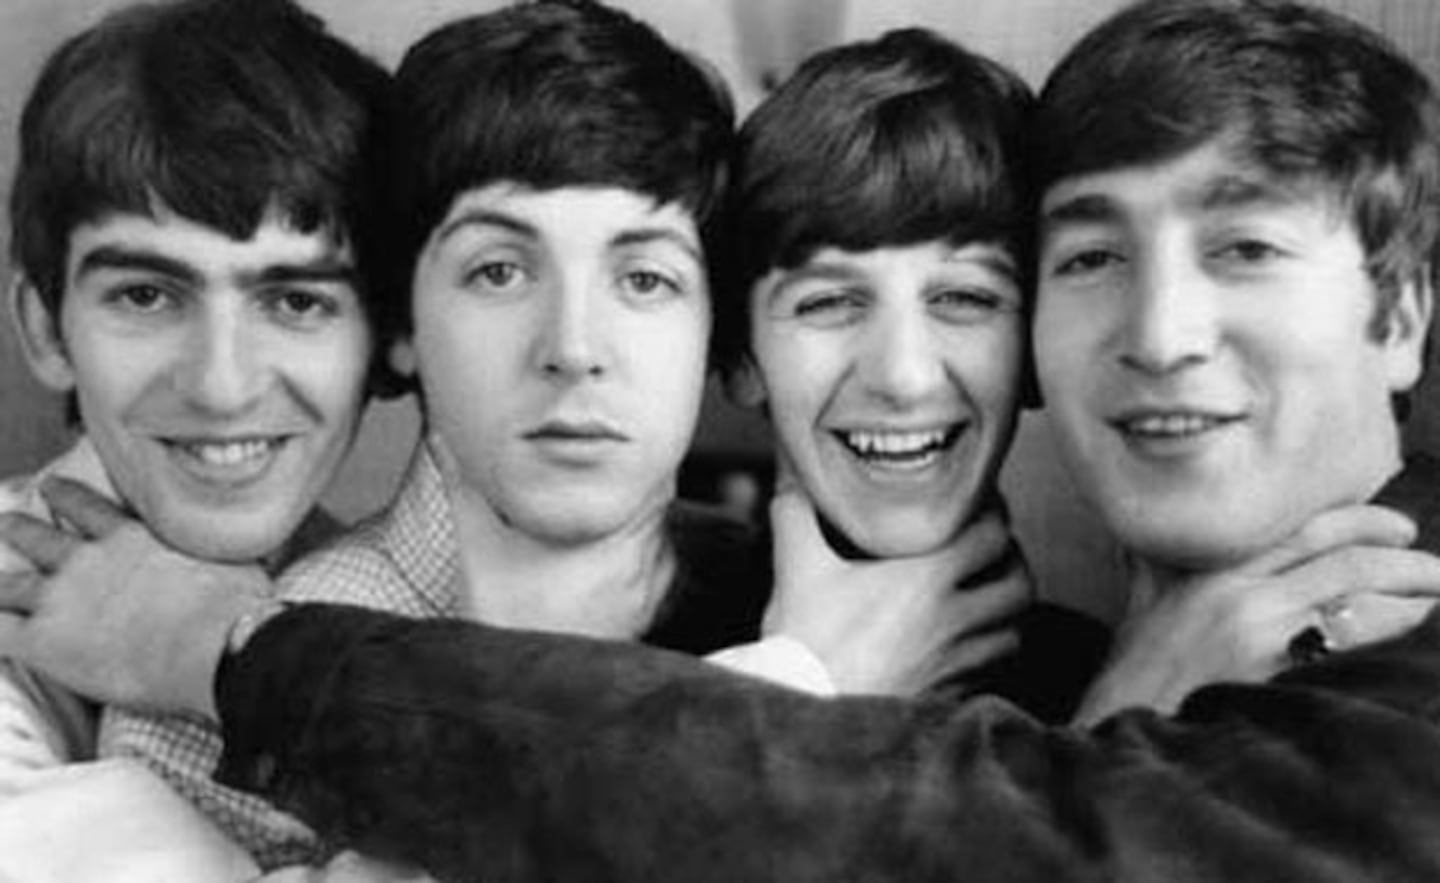 Los Beatles, muy jovencitos. En 2012 tocarán en los Juegos Olímpicos de Londres, ayuda tecnológica mediante. (Foto: Web)